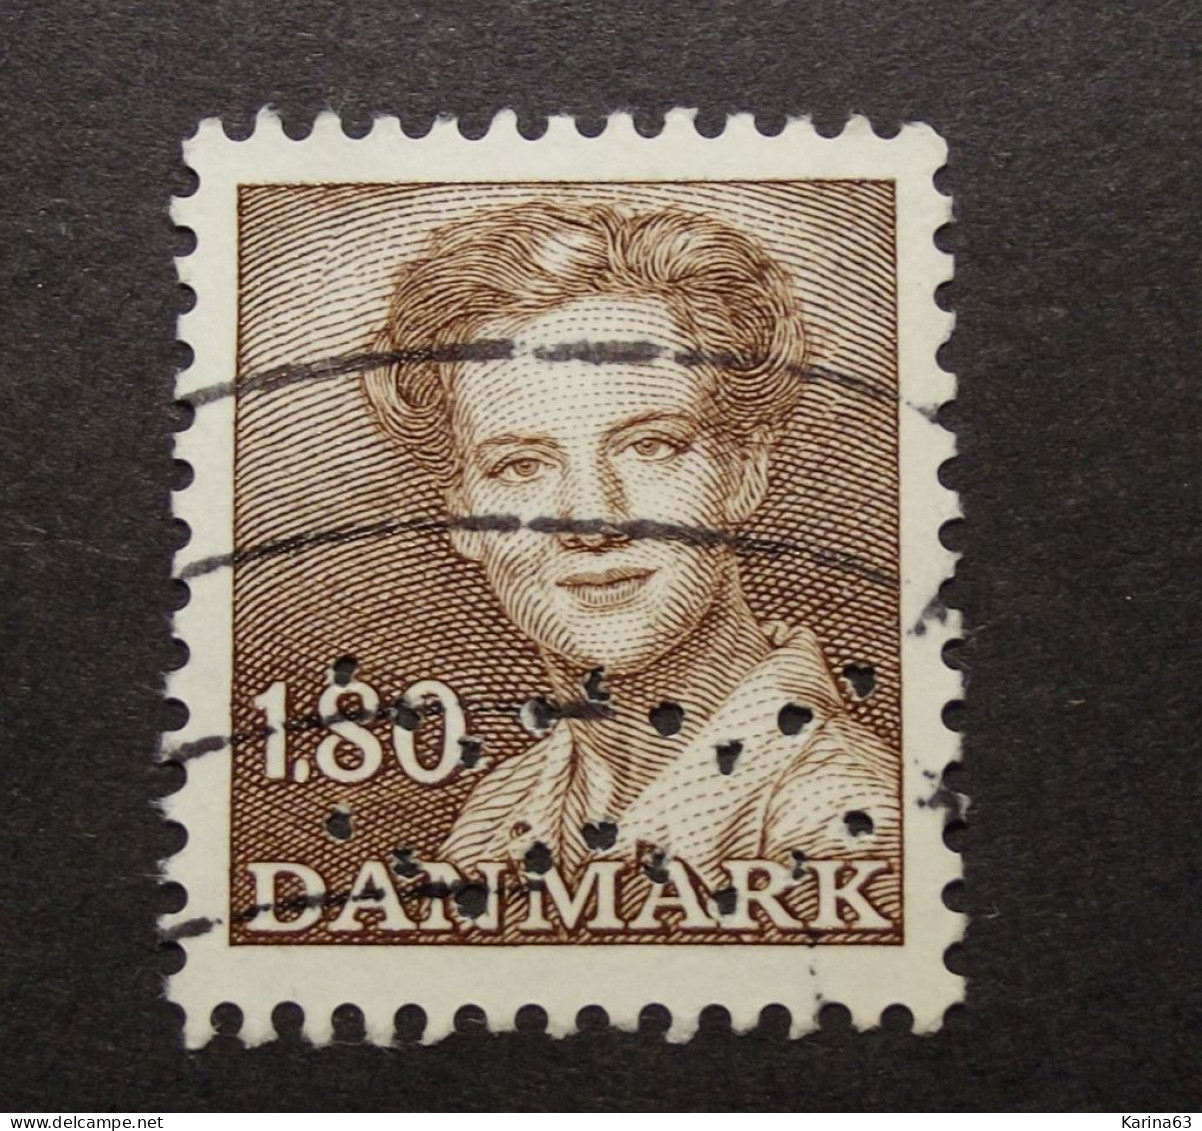 Denmark  - Danemark - 1975 - ( Queen Margrethe ) Perfin - Lochung -  Waves - Kobenhavns Kommune - Cancelled - Gebraucht